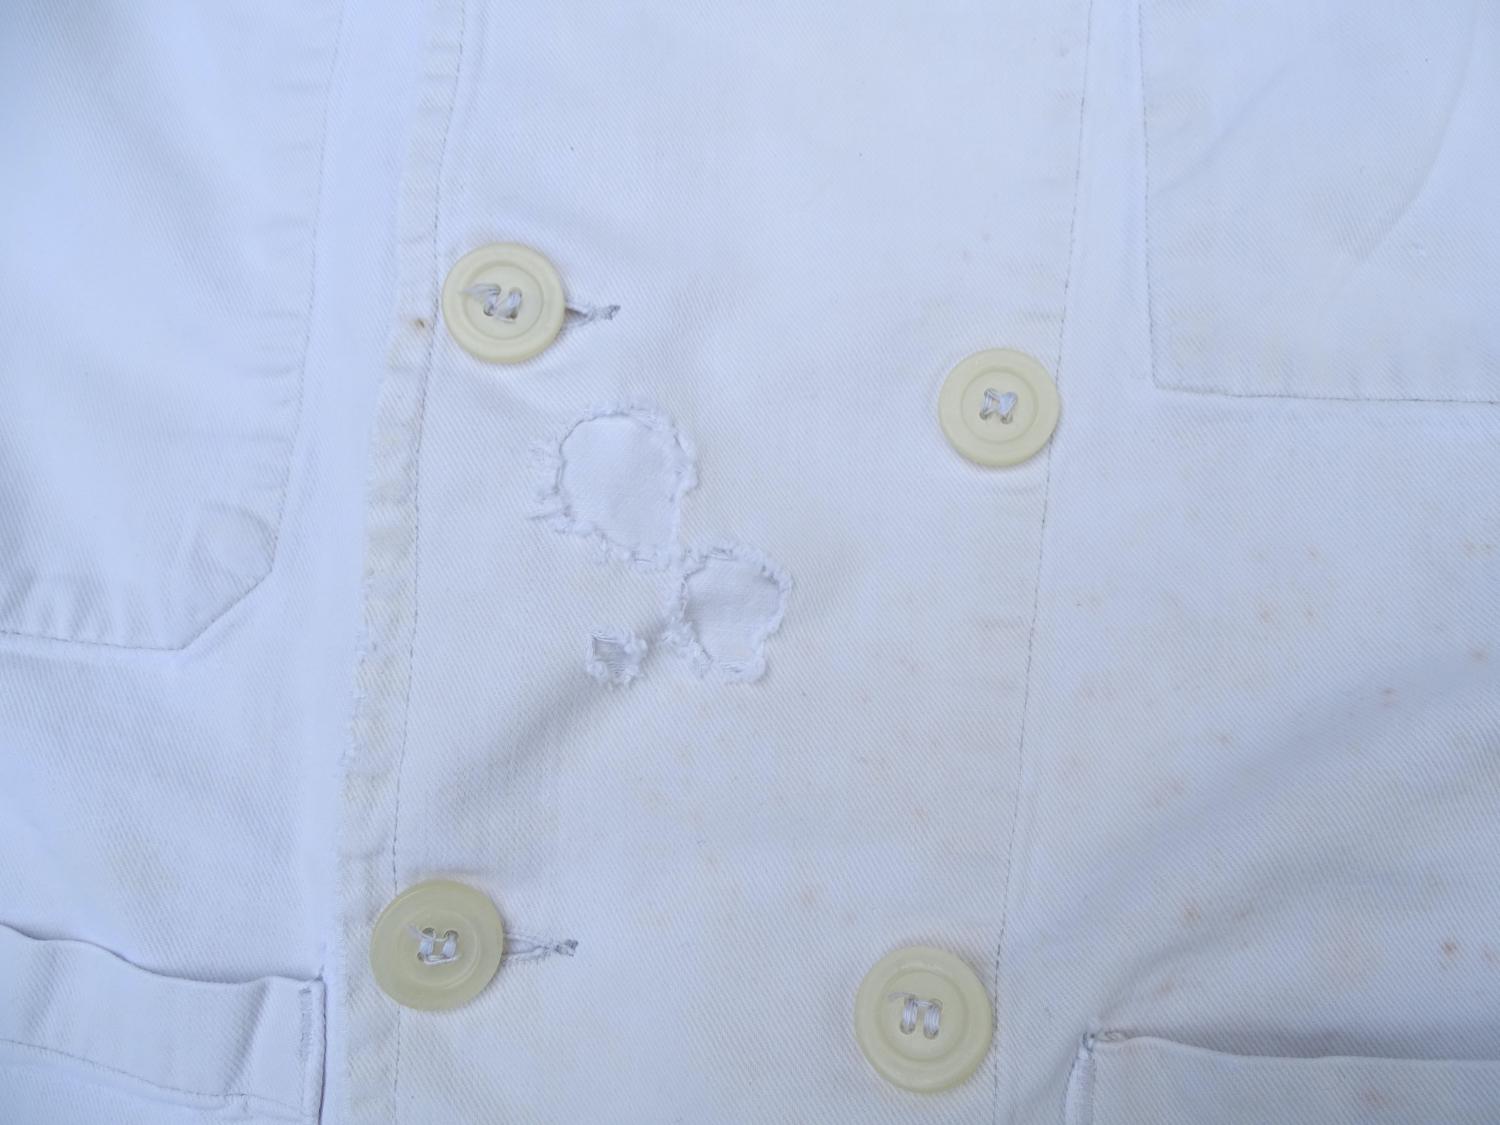 Veste de travail &agrave; double boutonnage  coton blanc  Peintre, platrier. Robur